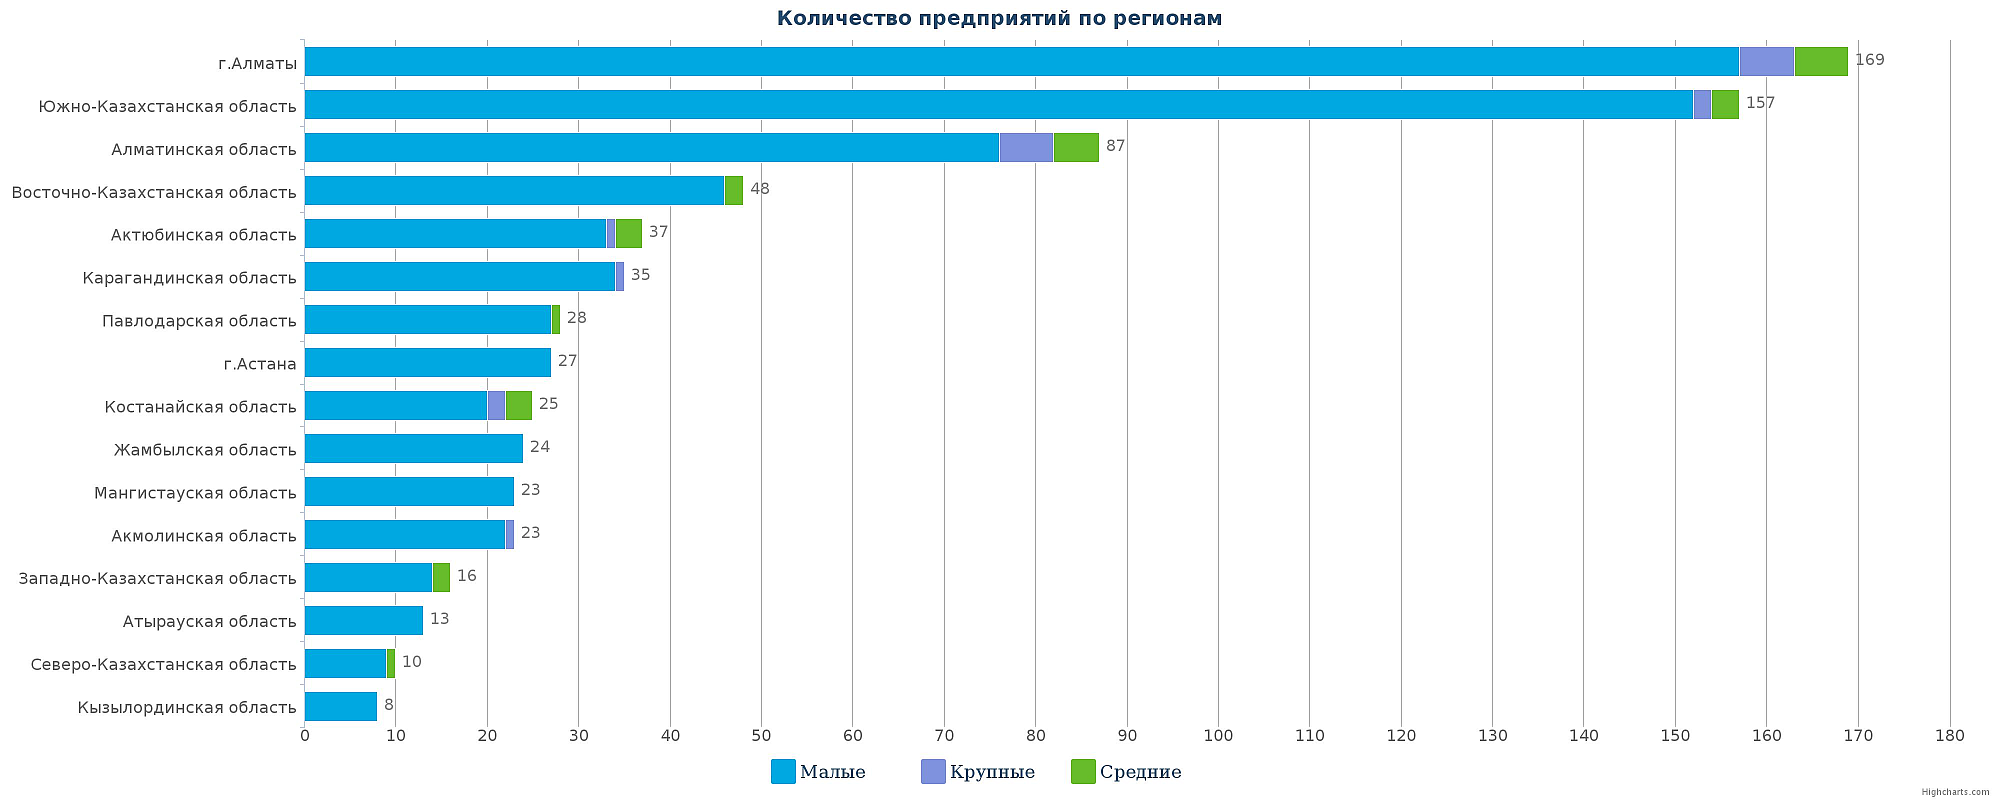 Количество компаний-производителей напитков в Казахстане по регионам на 17.11.2016